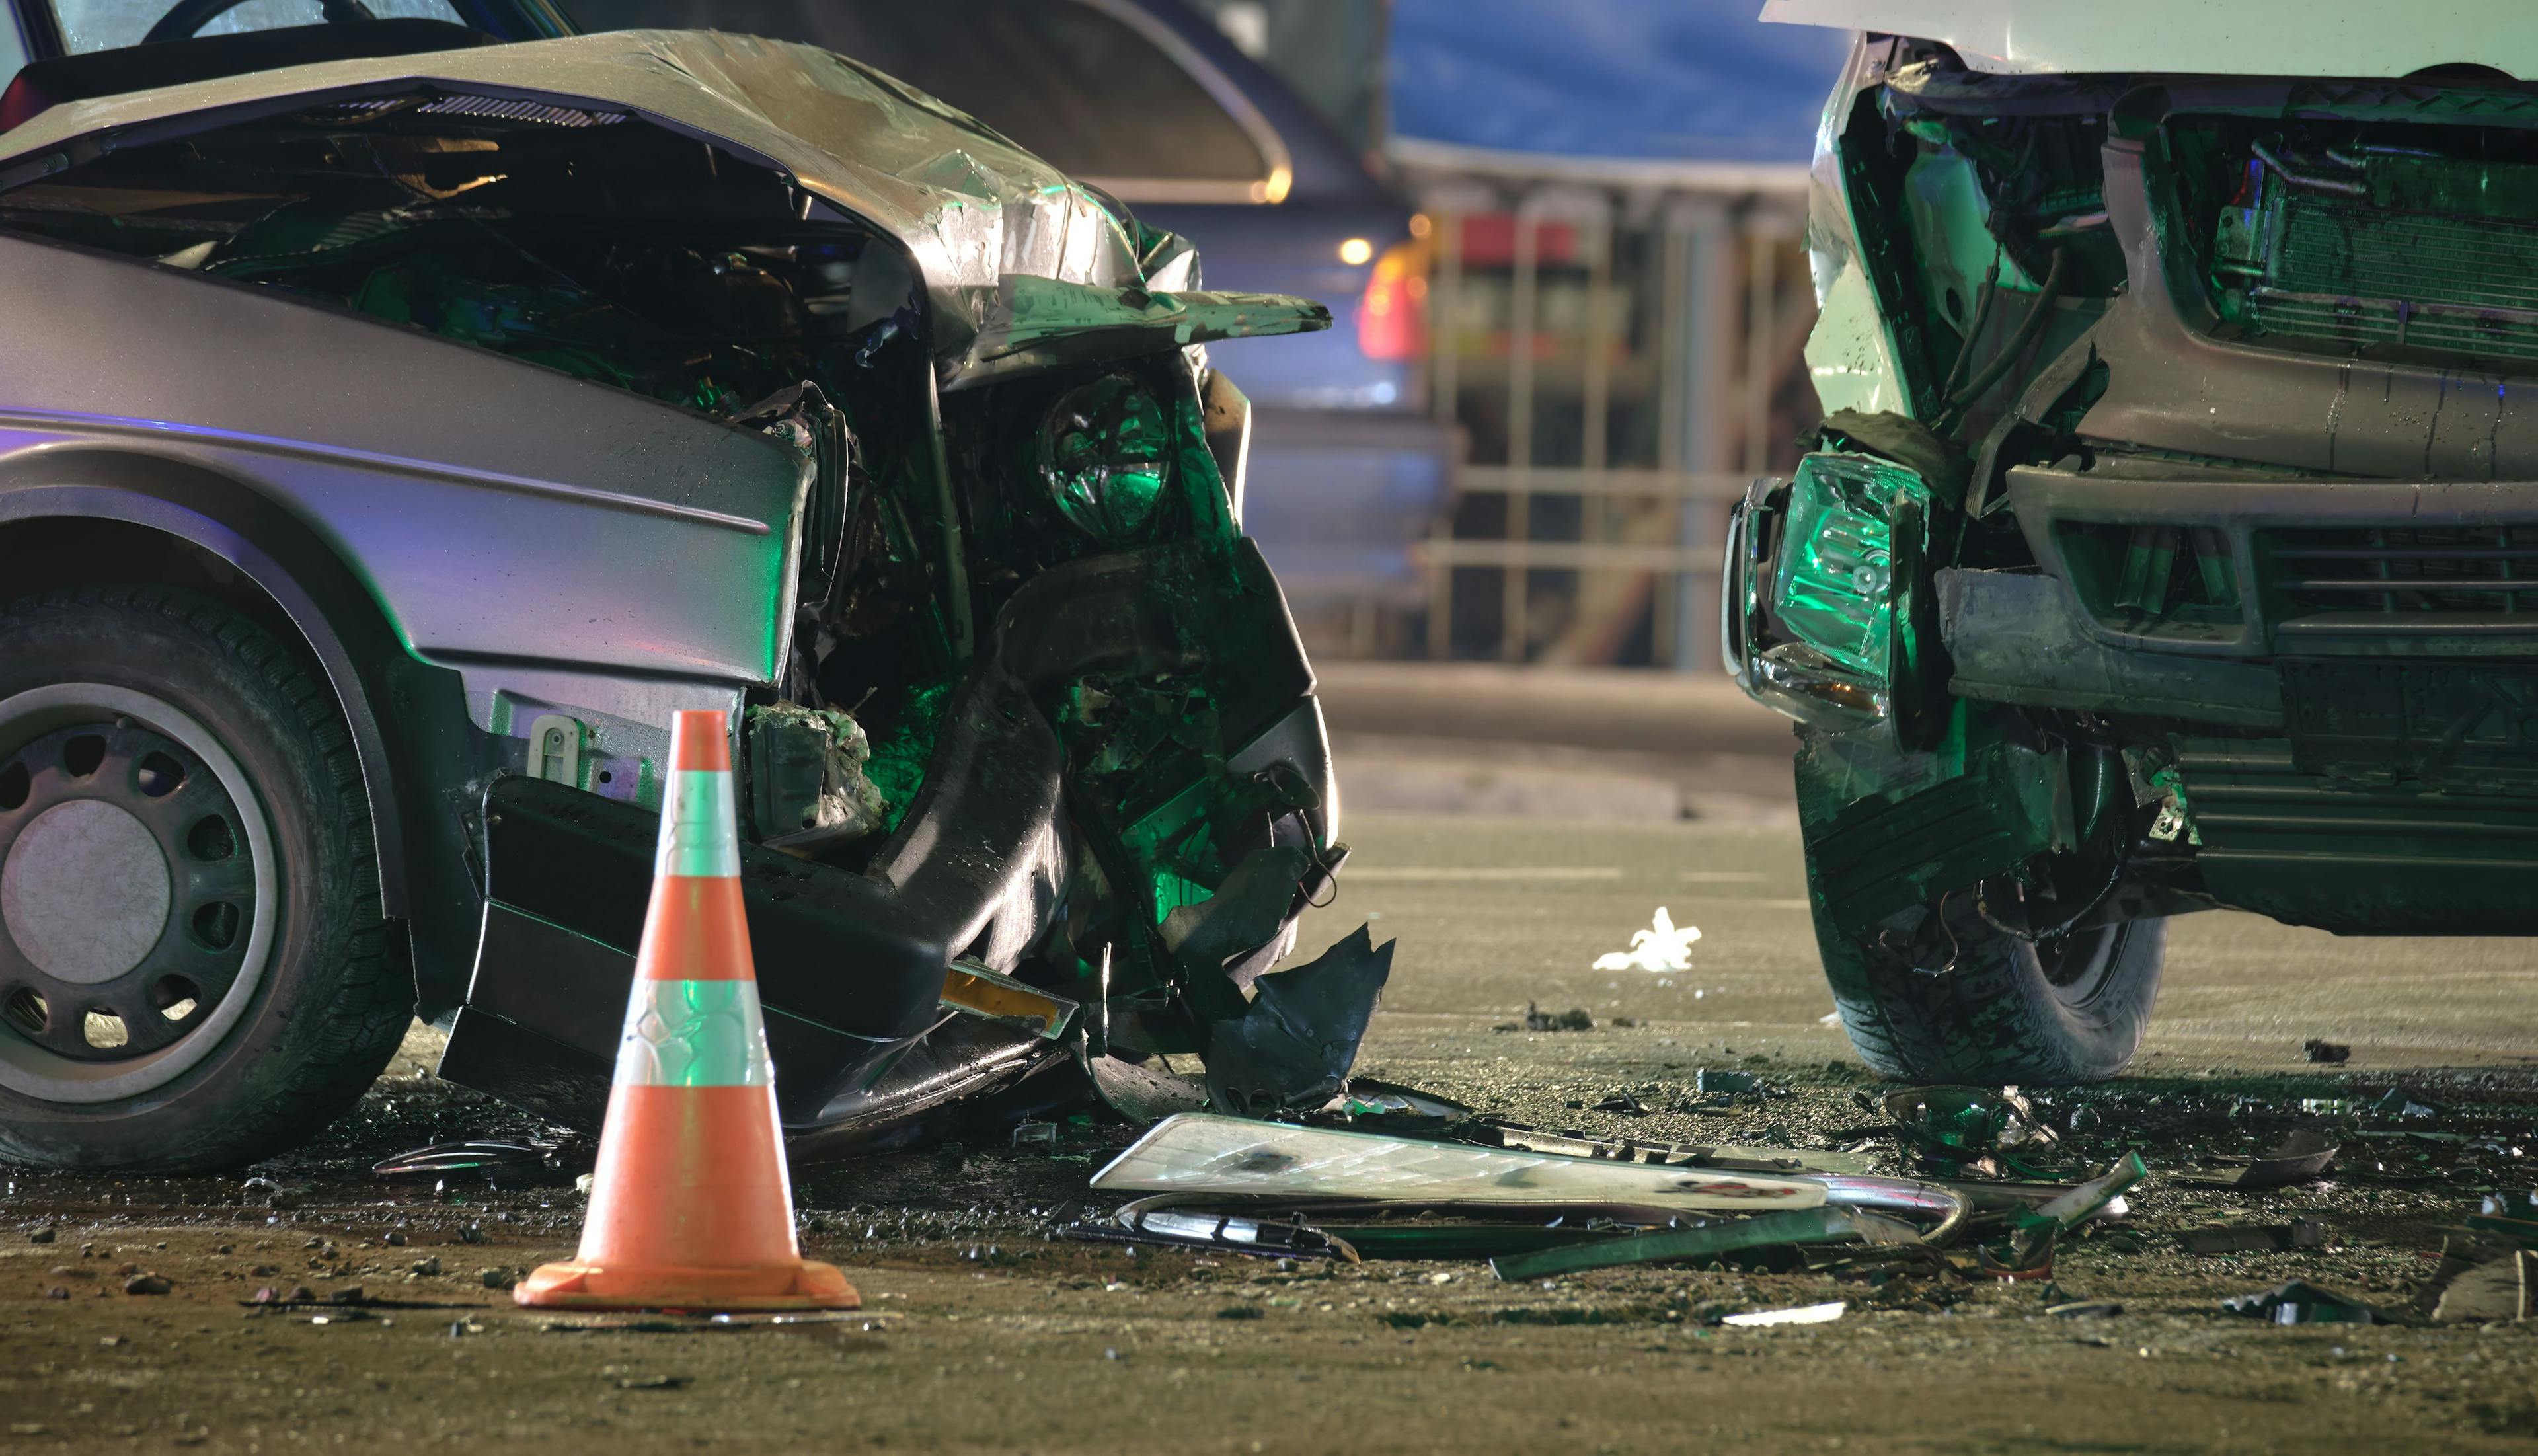 Abogados para Accidentes de Autos: Beneficios de Contratar Expertos Legales